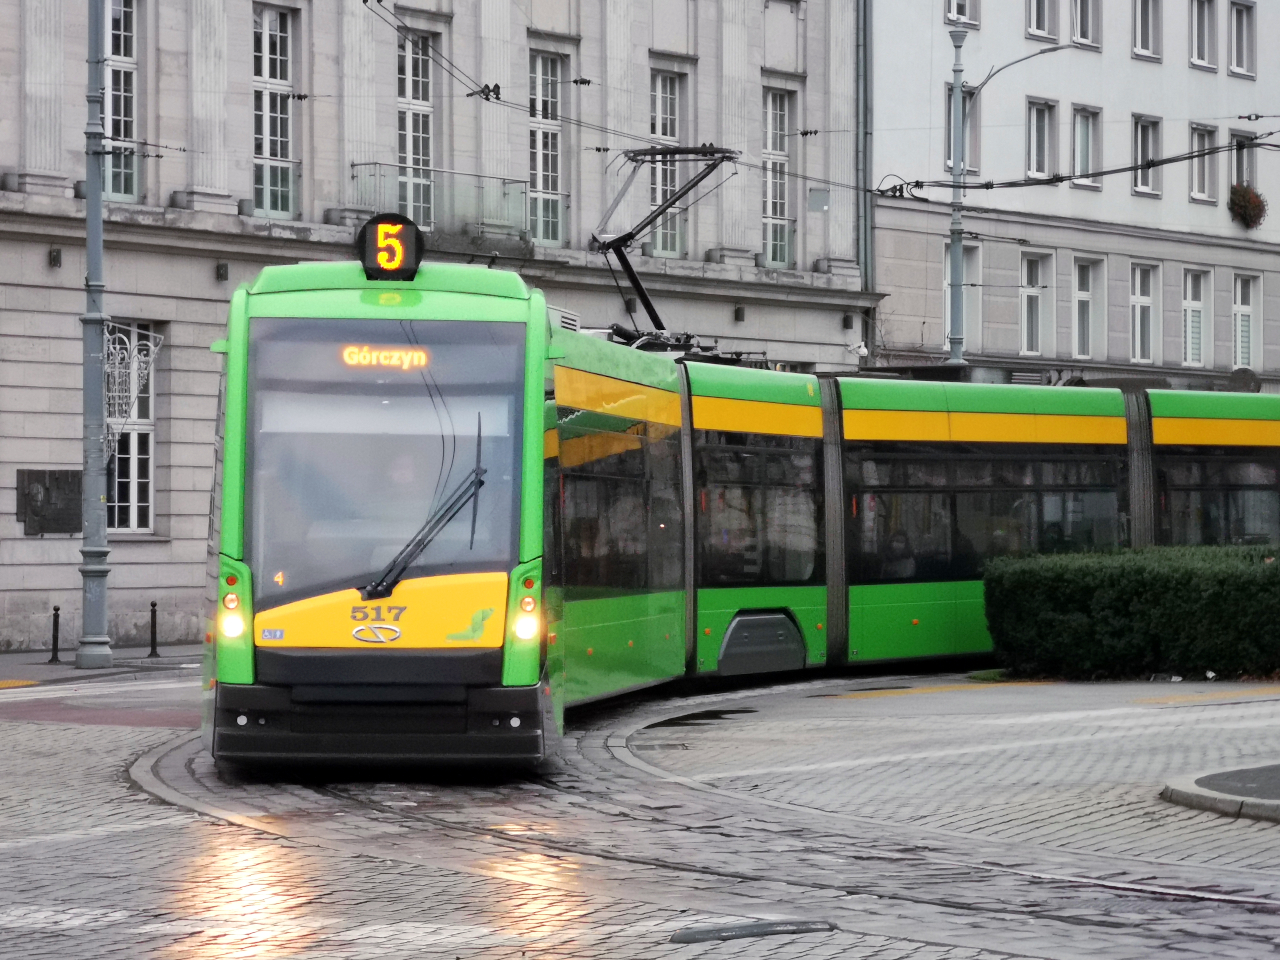 Tramwaj Solaris Tramino odjeżdża z przystanku "Marcinkowskiego" i wjeżdża na plac Wolności (pojazd MPK Poznań), pogoda pochmurna